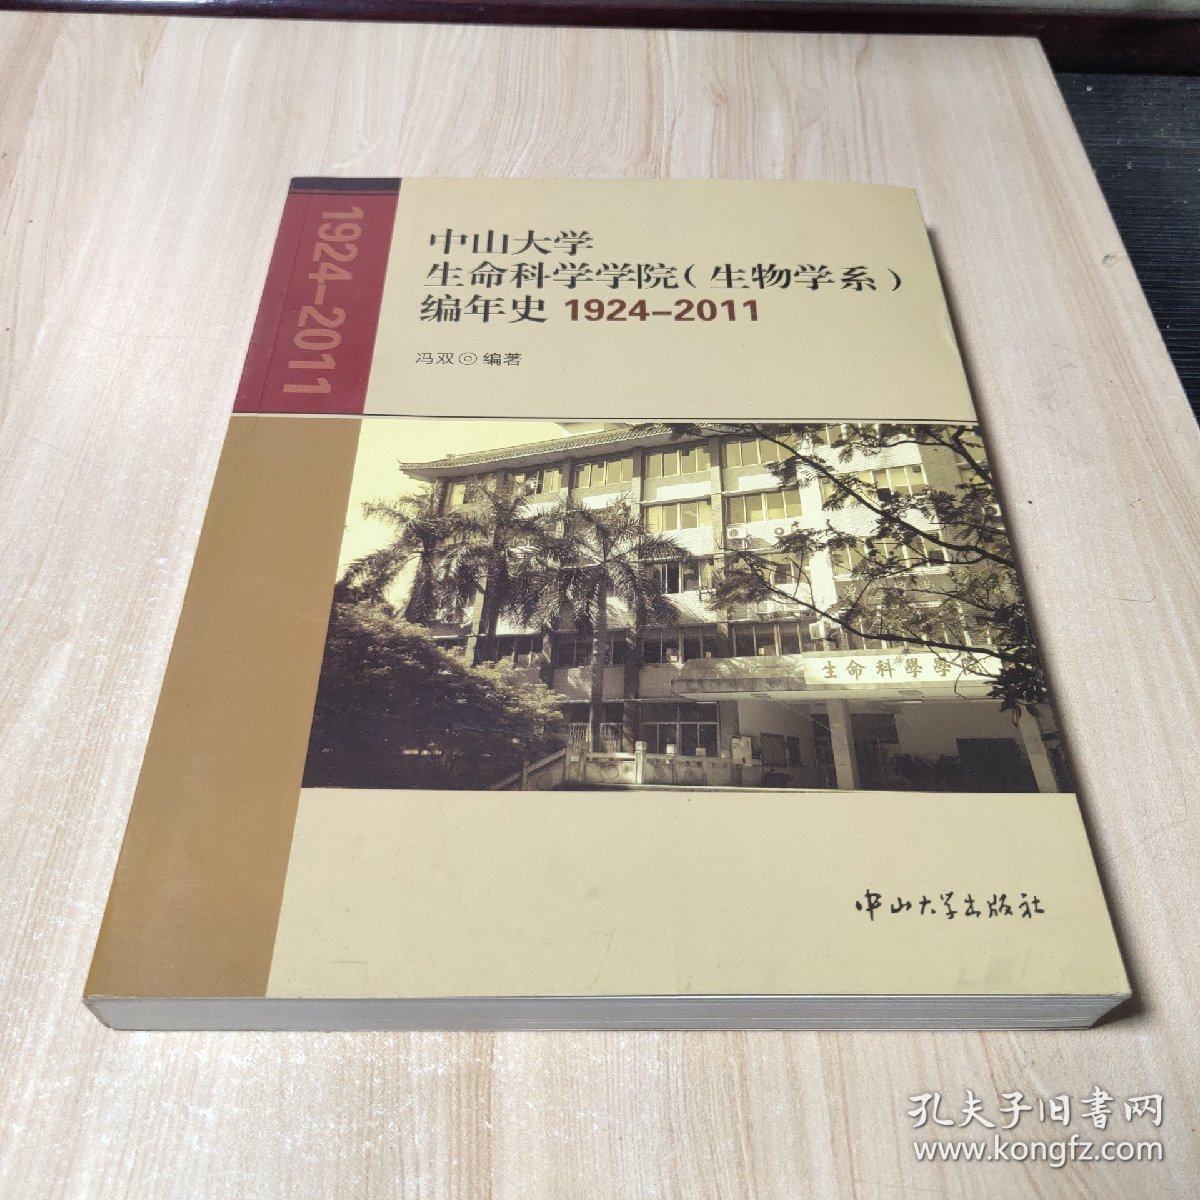 中山大学生命科学学院(生物学系)编年史:1924-2007